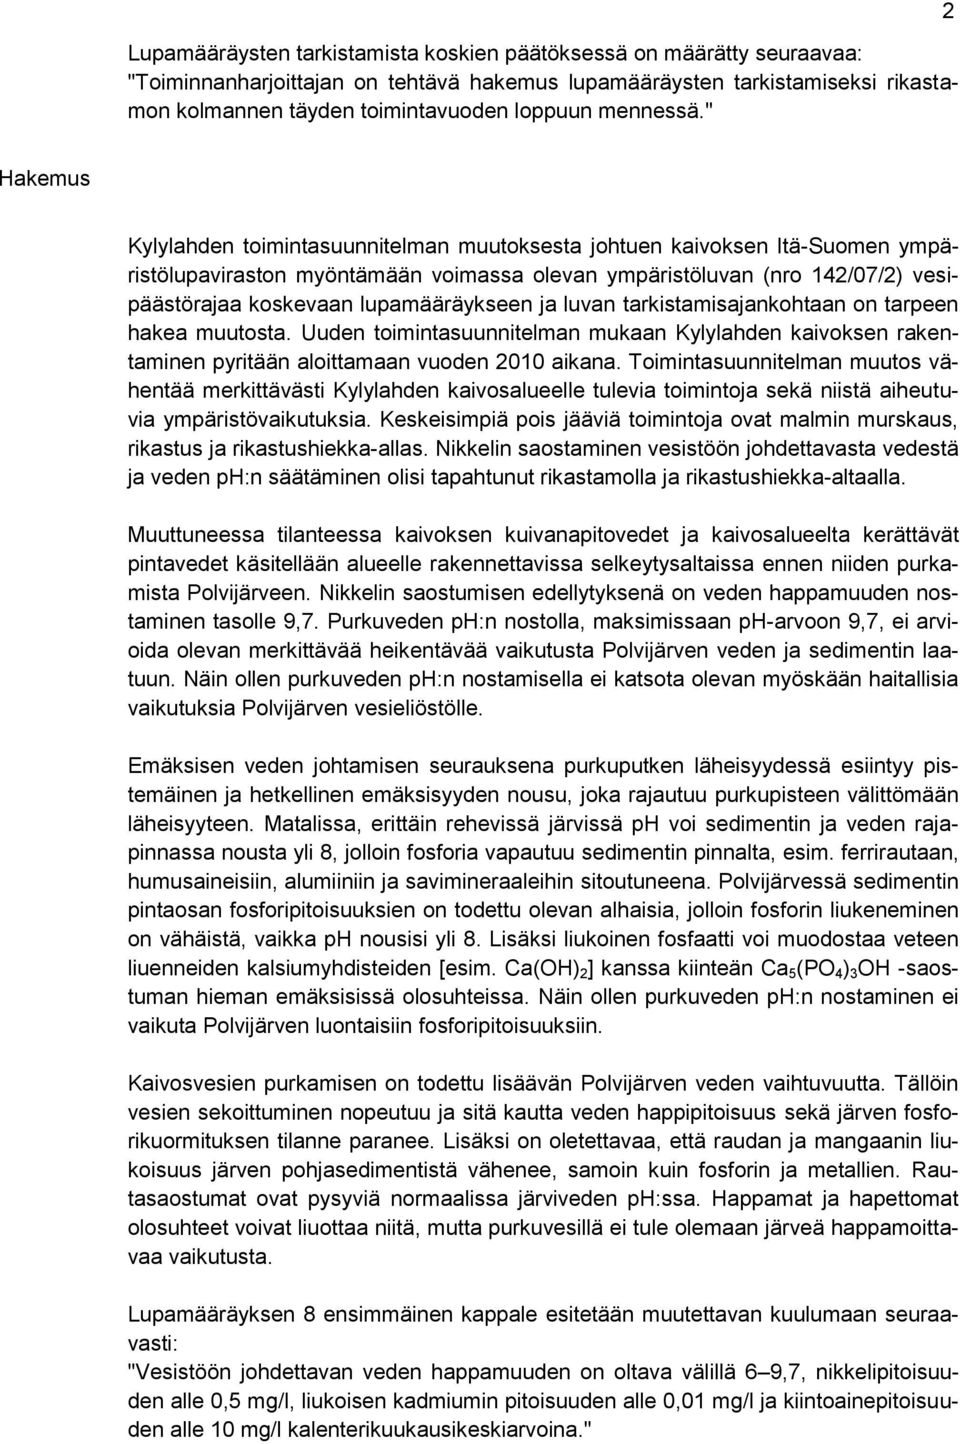 " 2 Hakemus Kylylahden toimintasuunnitelman muutoksesta johtuen kaivoksen Itä-Suomen ympäristölupaviraston myöntämään voimassa olevan ympäristöluvan (nro 142/07/2) vesipäästörajaa koskevaan